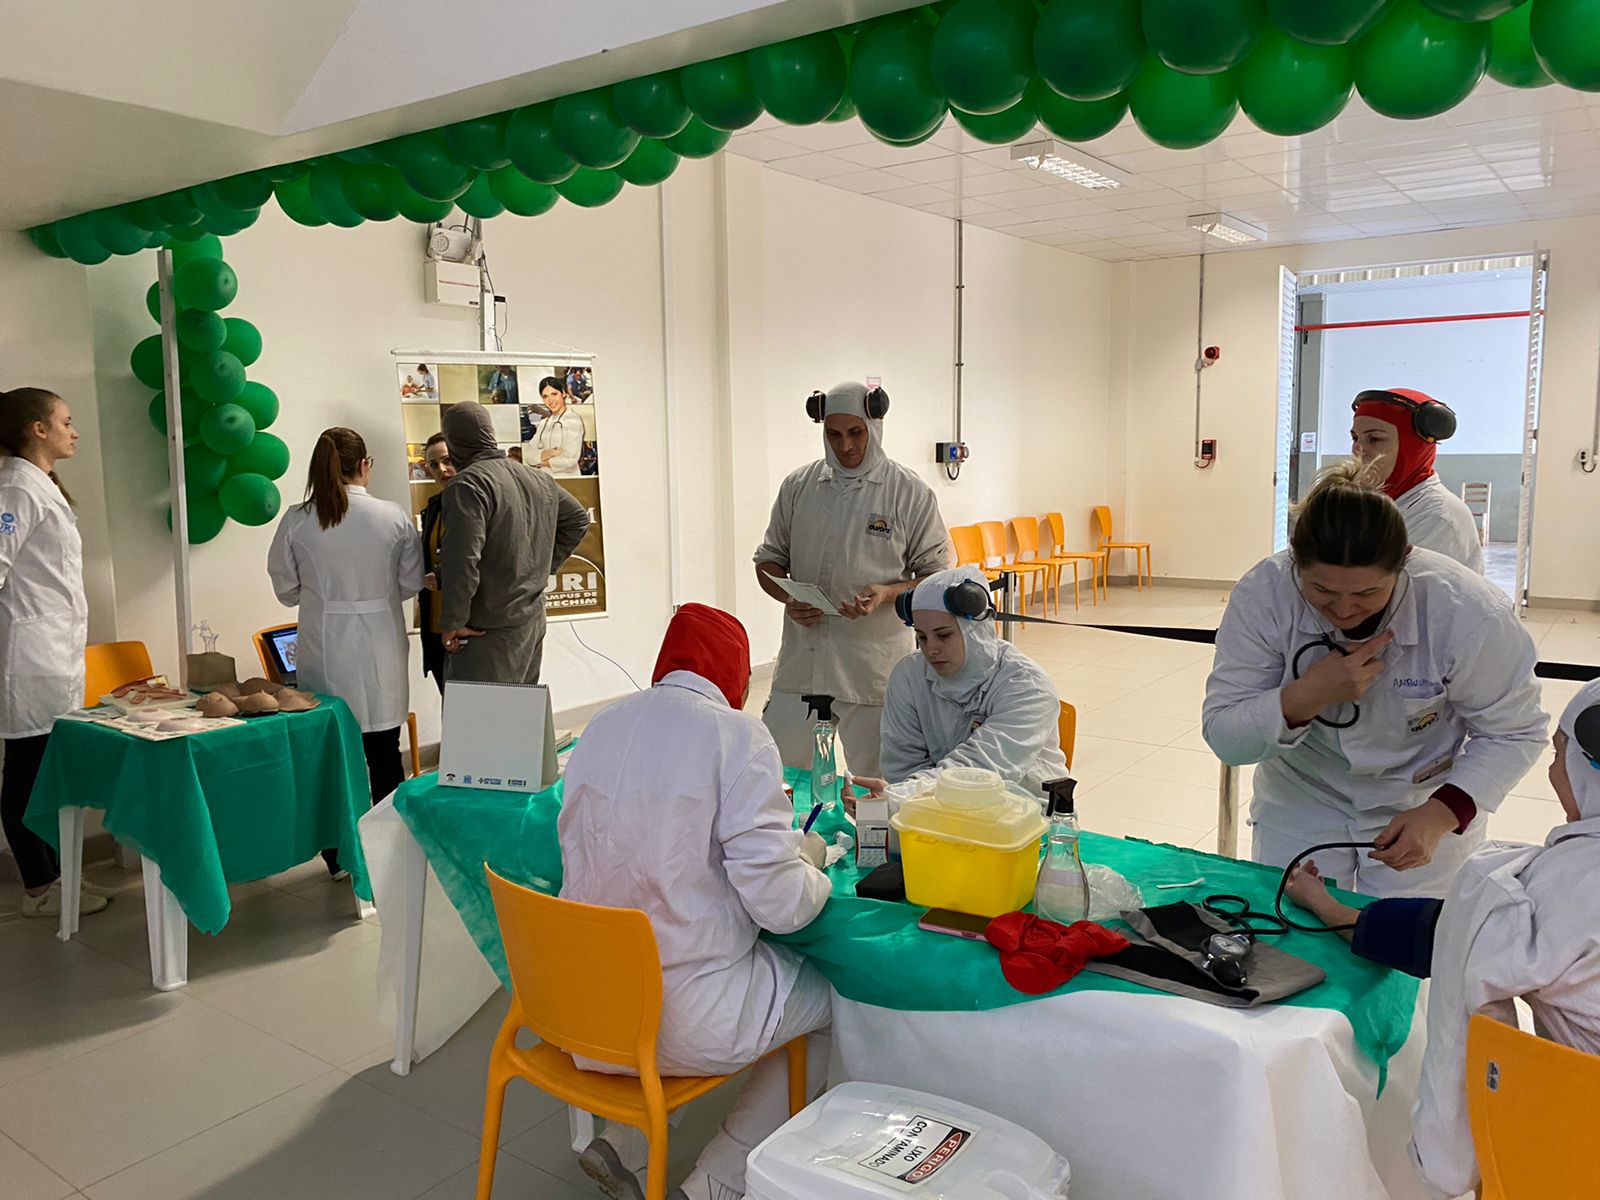 Enfermagem da URI promove atividade alusiva ao Dia Nacional da Saúde em indústria de Erechim  